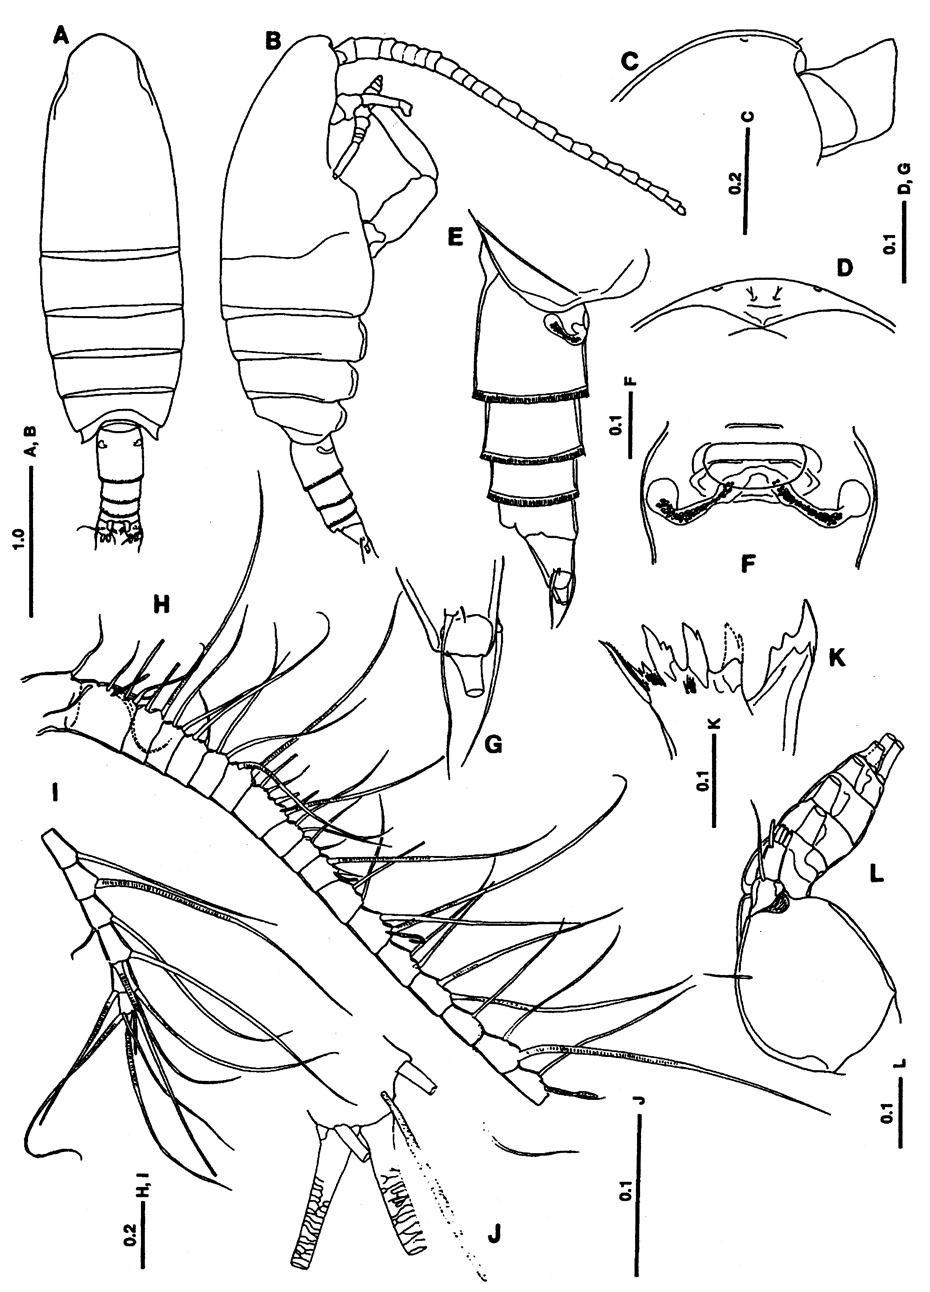 Espèce Lutamator paradiseus - Planche 1 de figures morphologiques